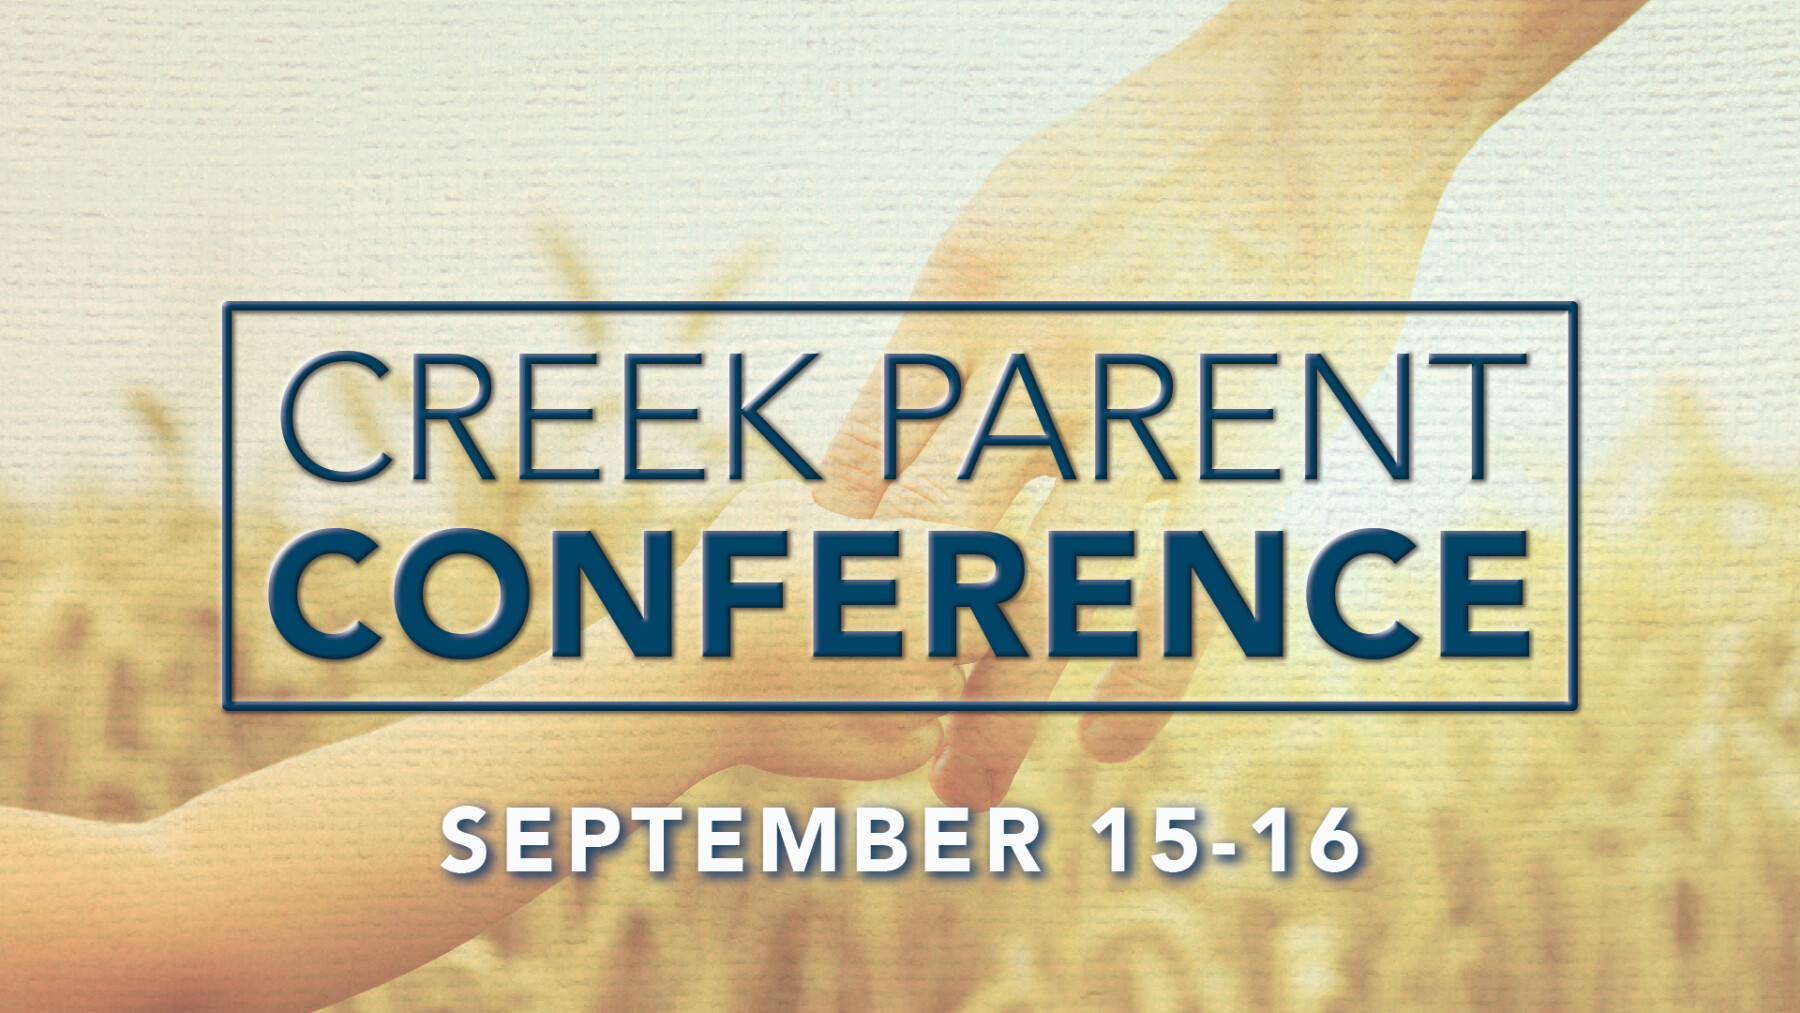 Creek Parent Conference